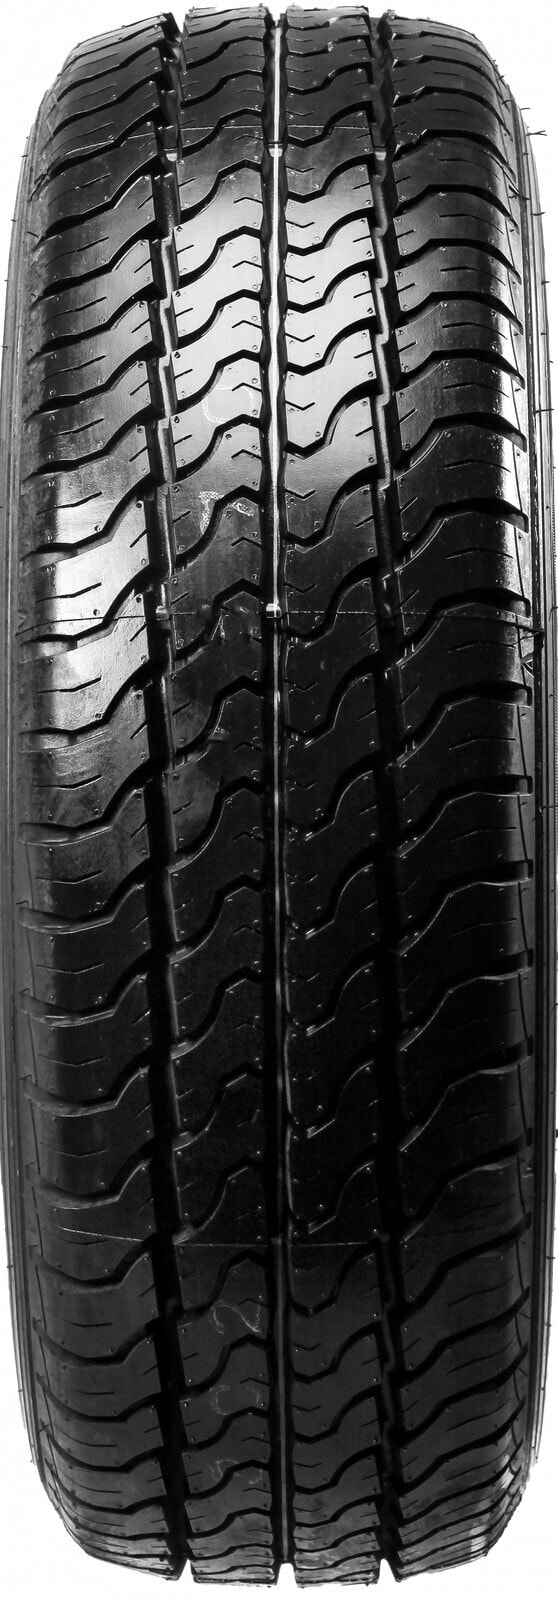 Шины для легких грузовых автомобилей летние Dunlop Econodrive LT 205/65 R15 102/100T